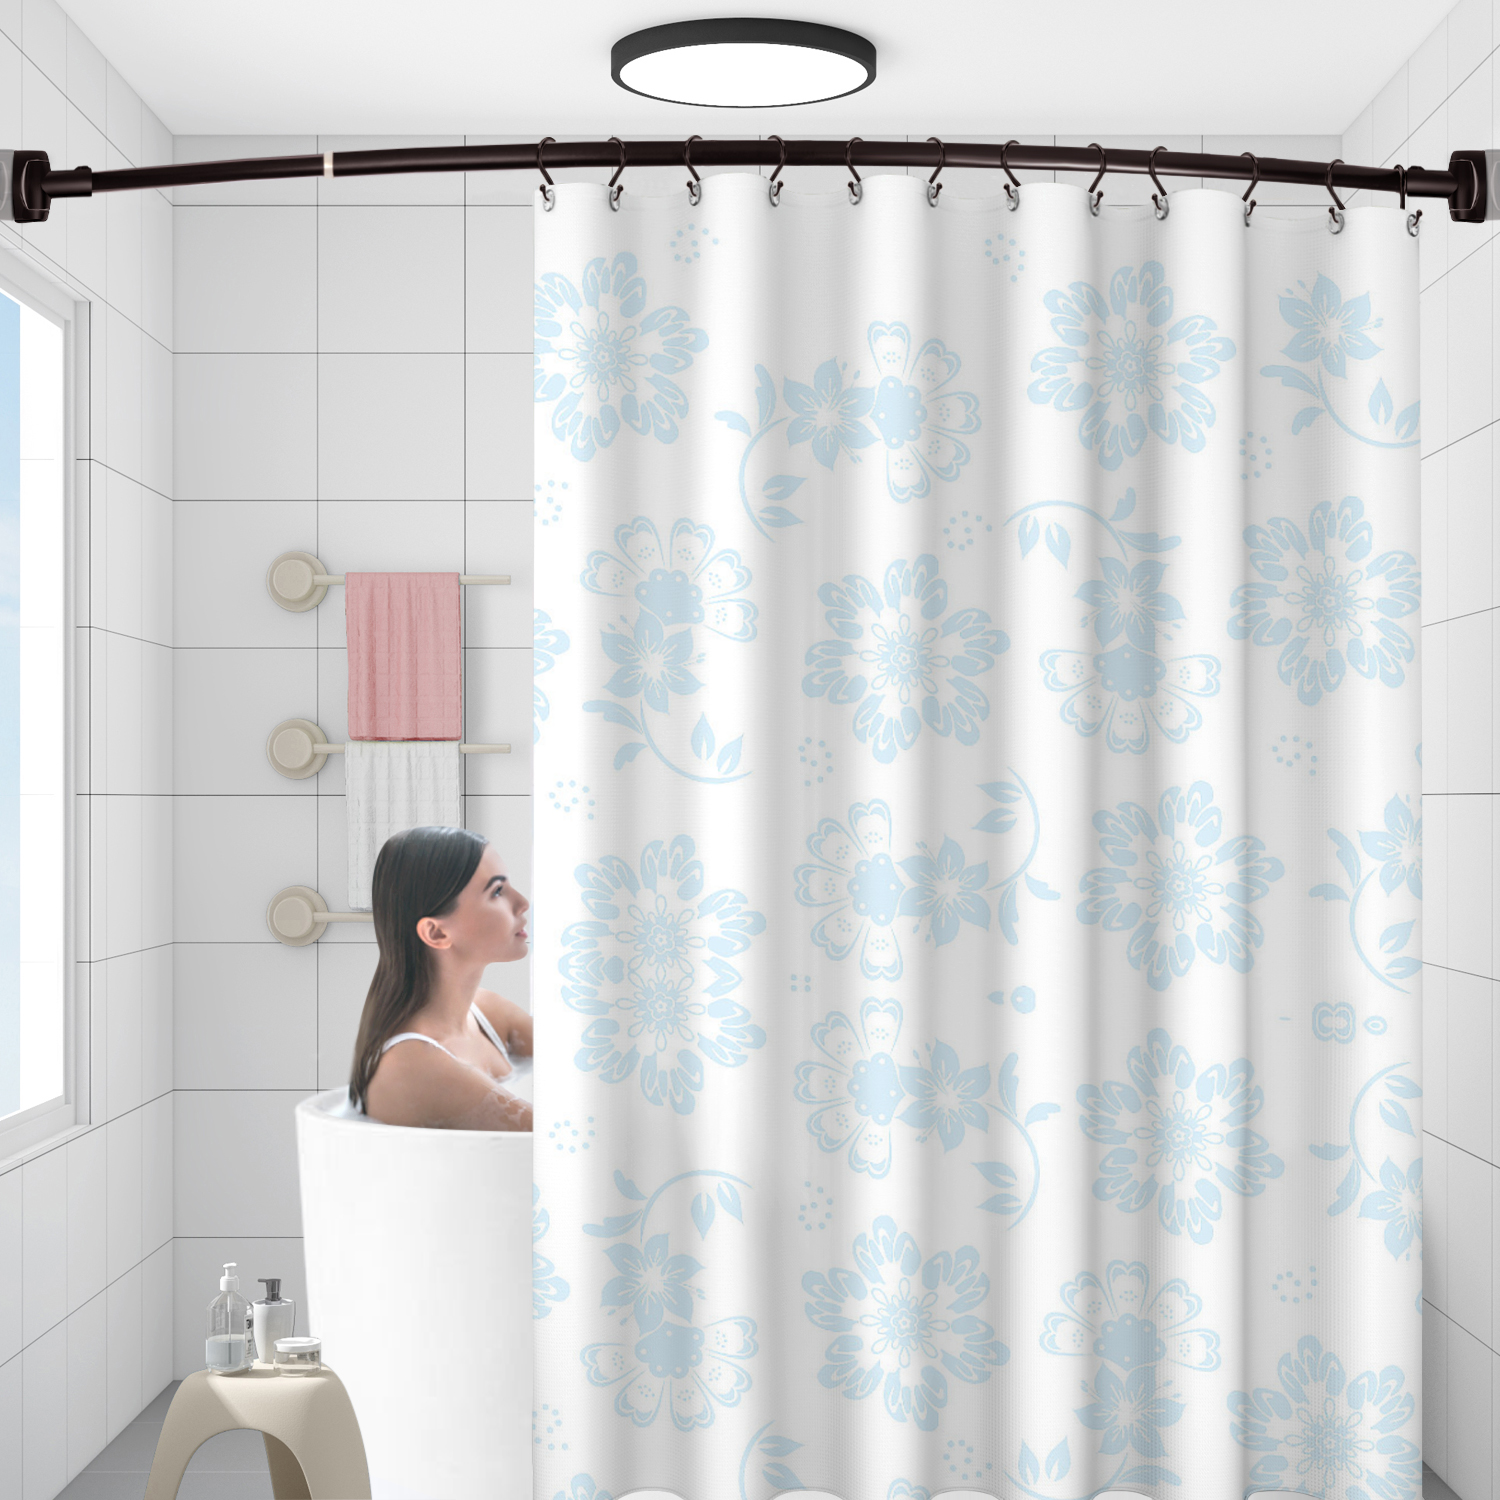 الجملة البرونزية لمط 304 المقاوم للصدأ منحني حوض استحمام للاستخدام في الحمام الزاوية دش الستار قضيب الرف (50 '-72 ')